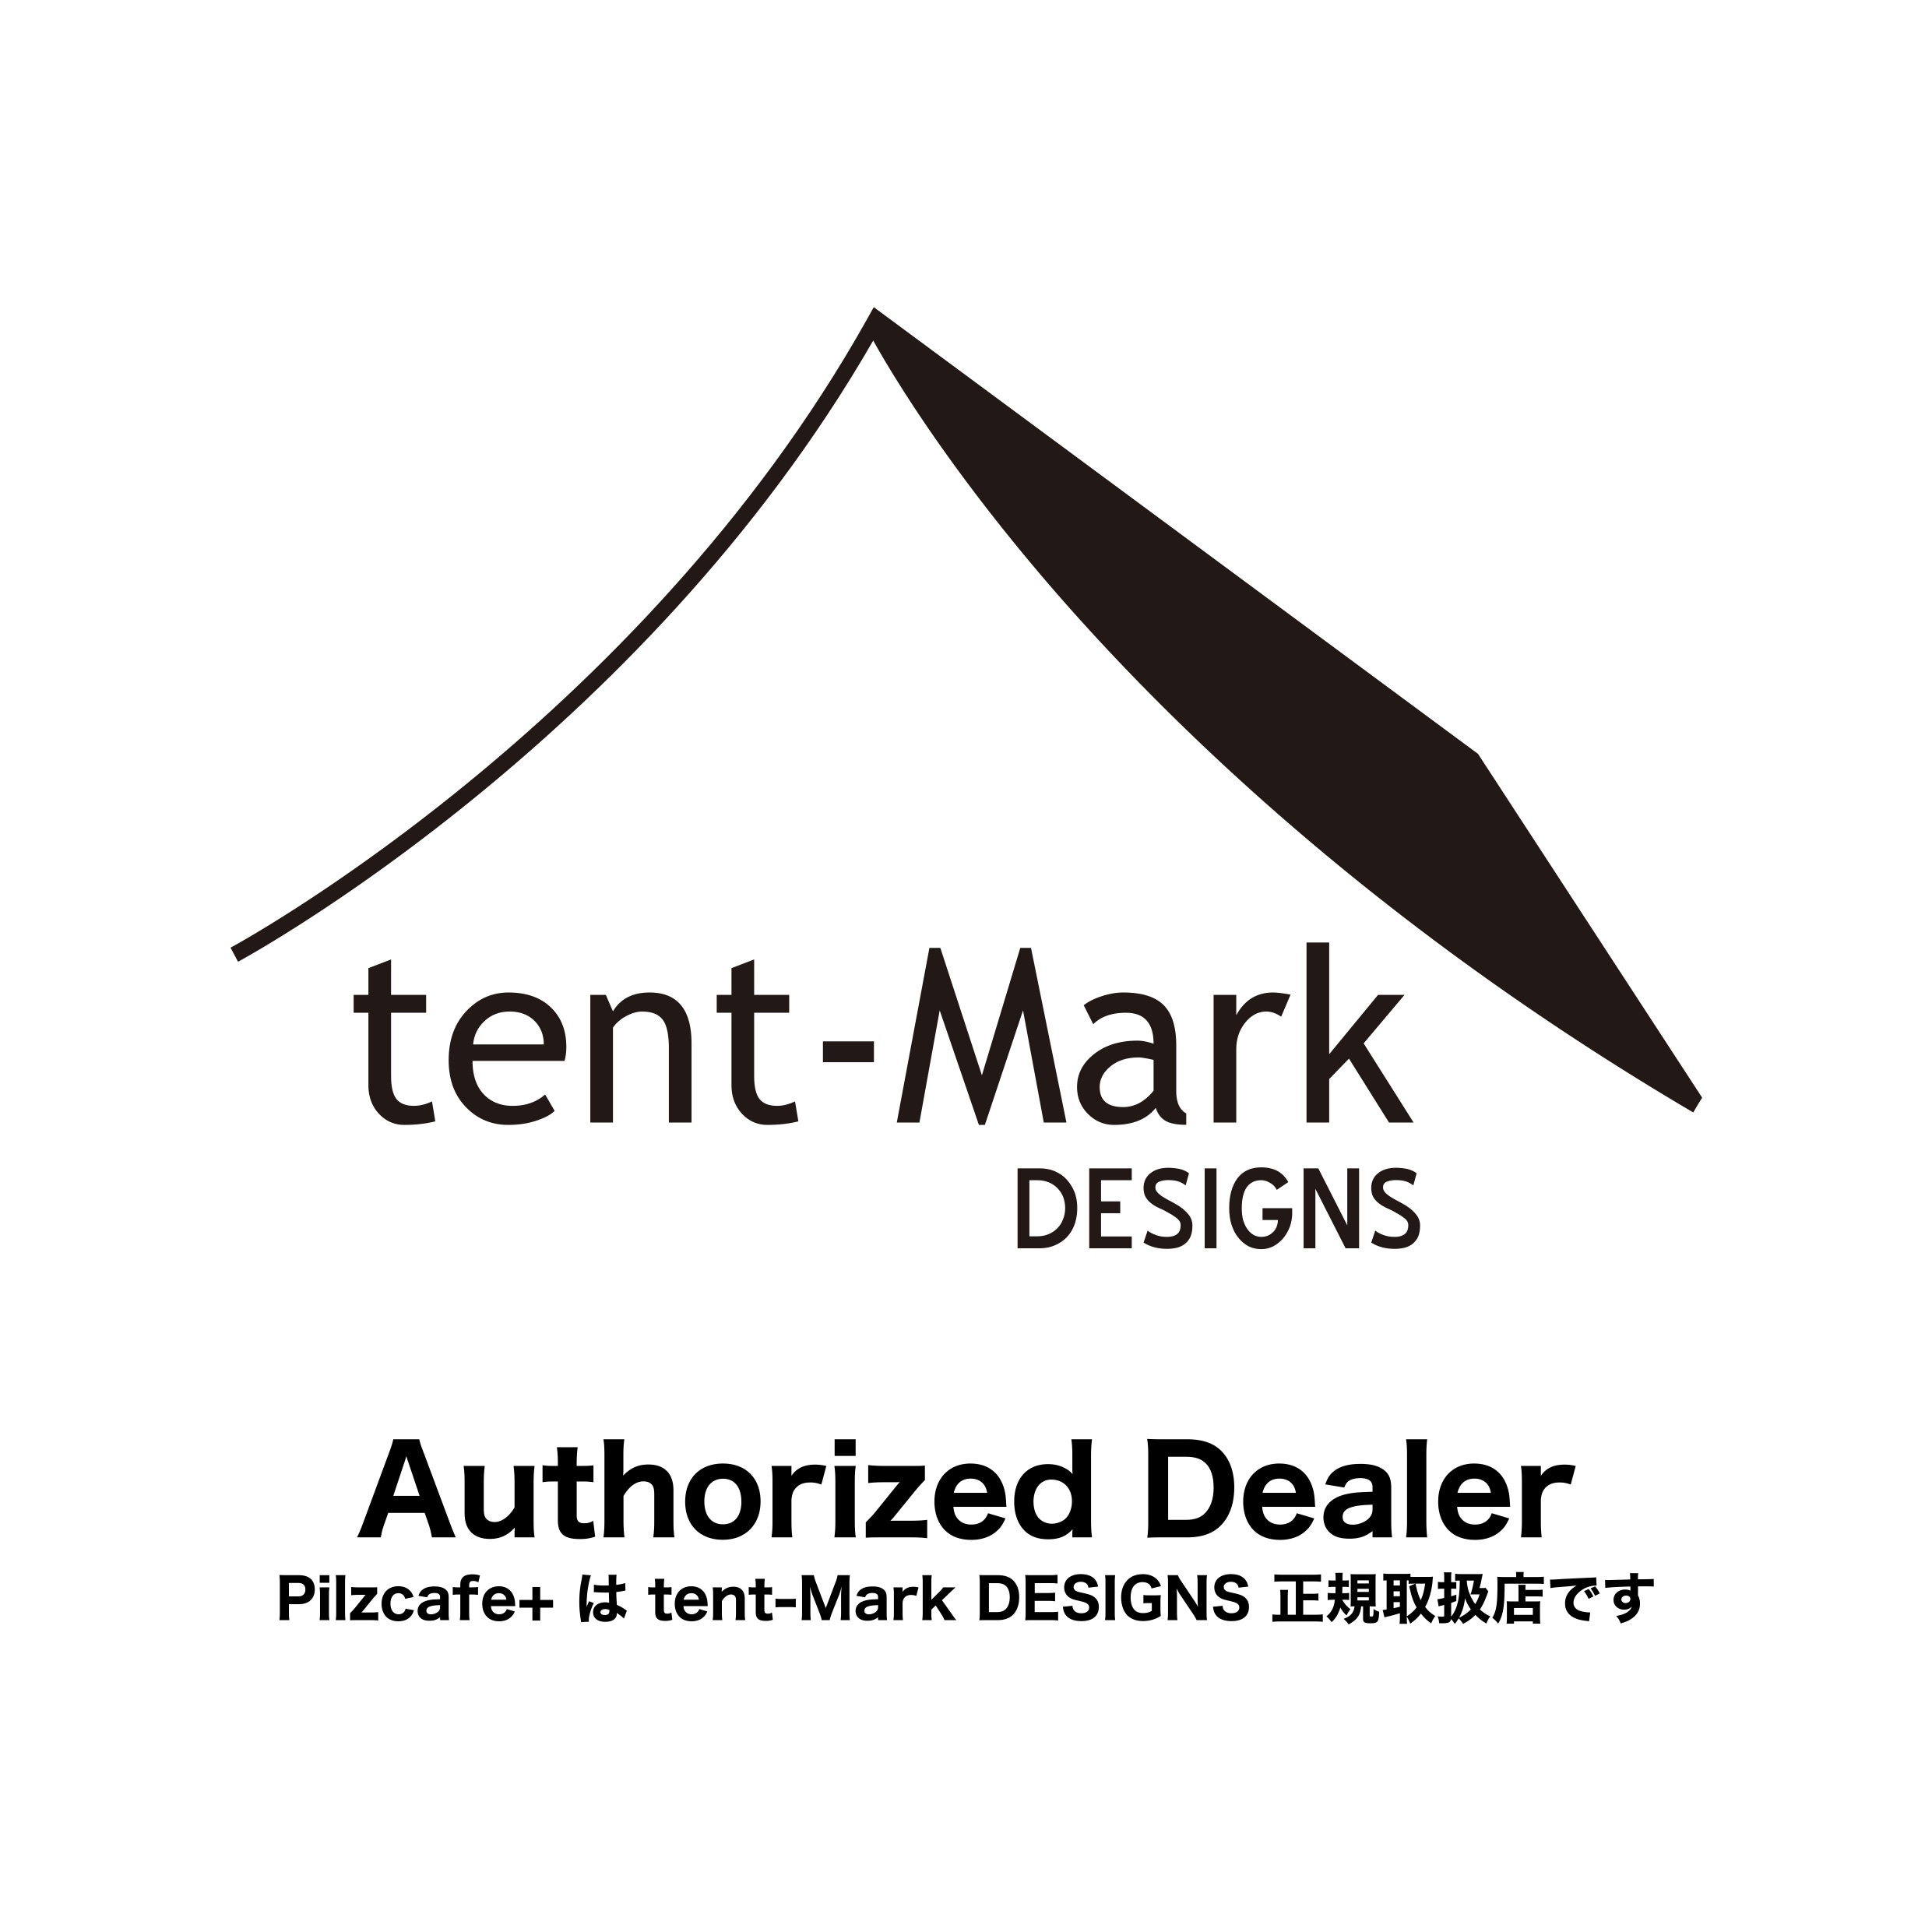 tent-Mark DESIGNS 様の製品をOn-line Shopでお取り扱いさせていただきます